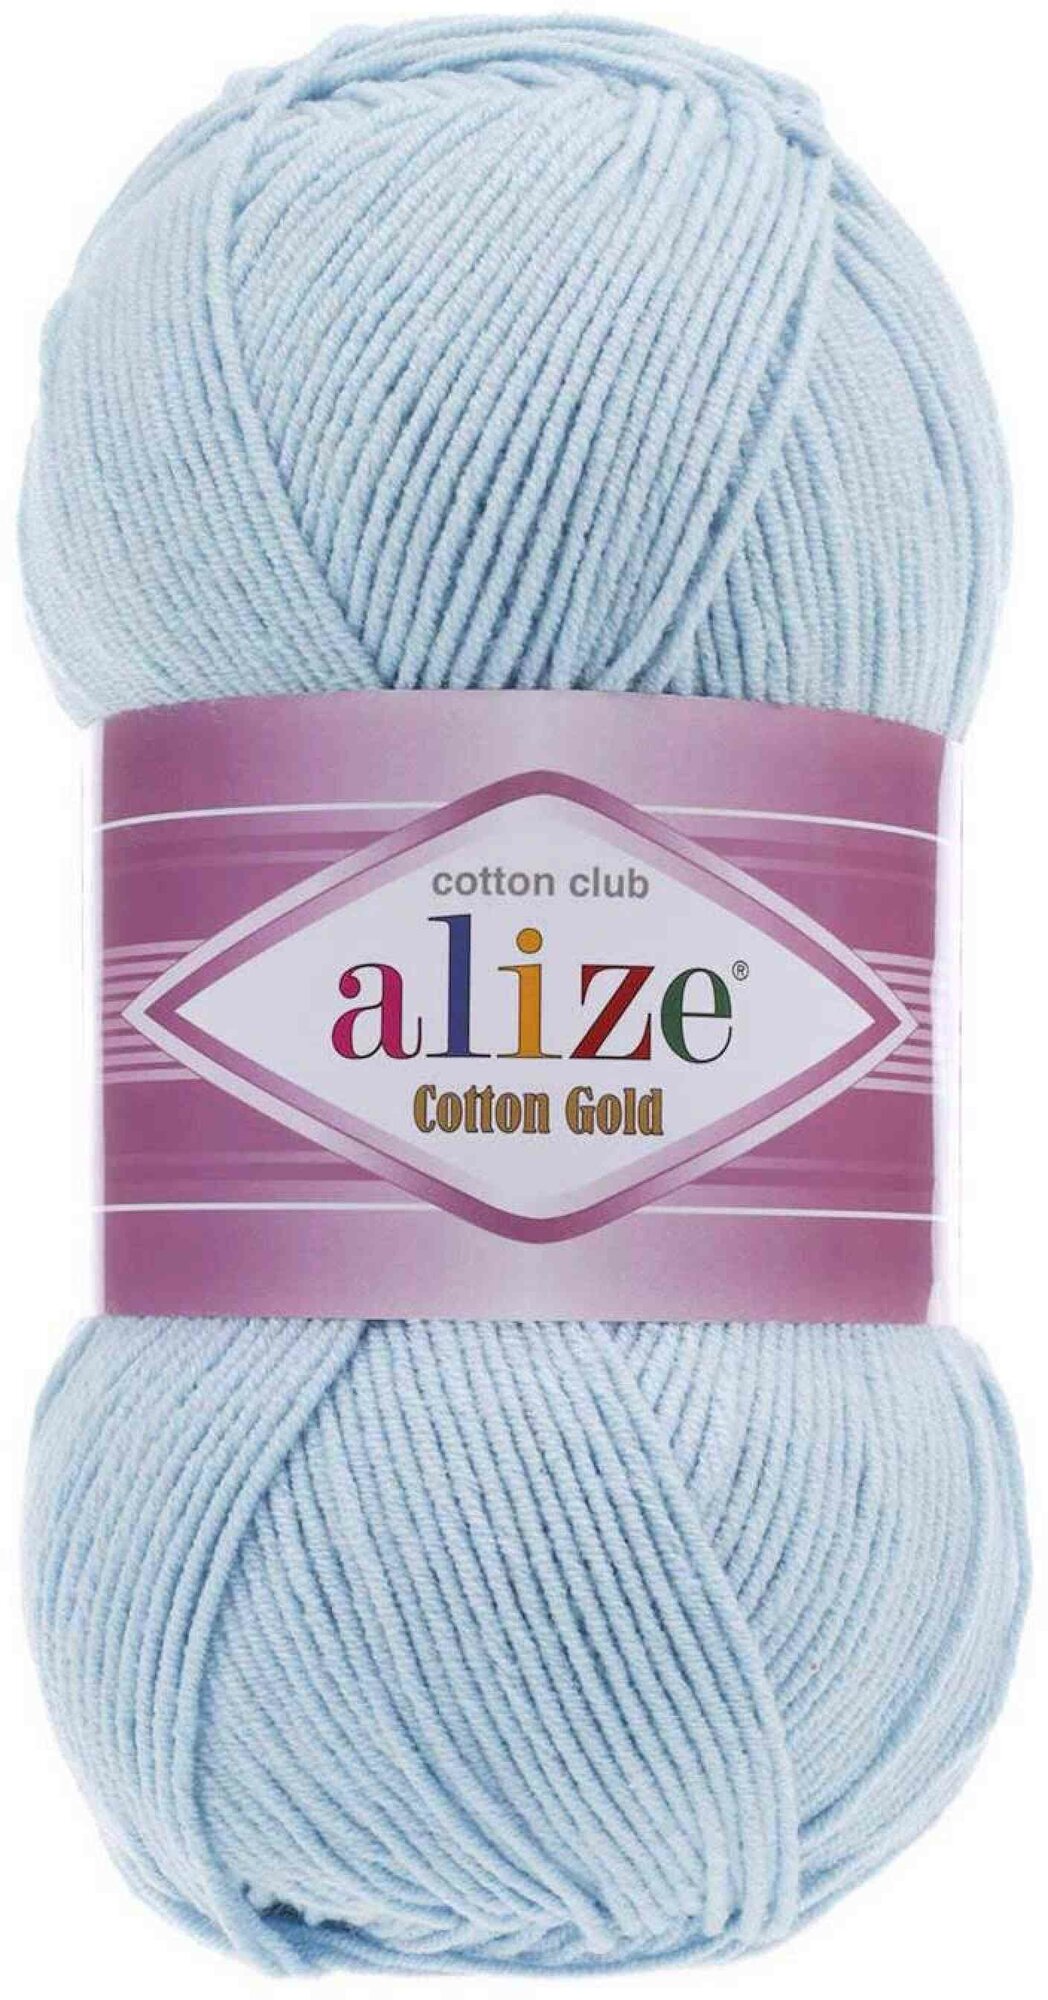 Пряжа Alize Cotton Gold бледно-голубой (513), 55%хлопок/45%акрил, 330м, 100г, 5шт